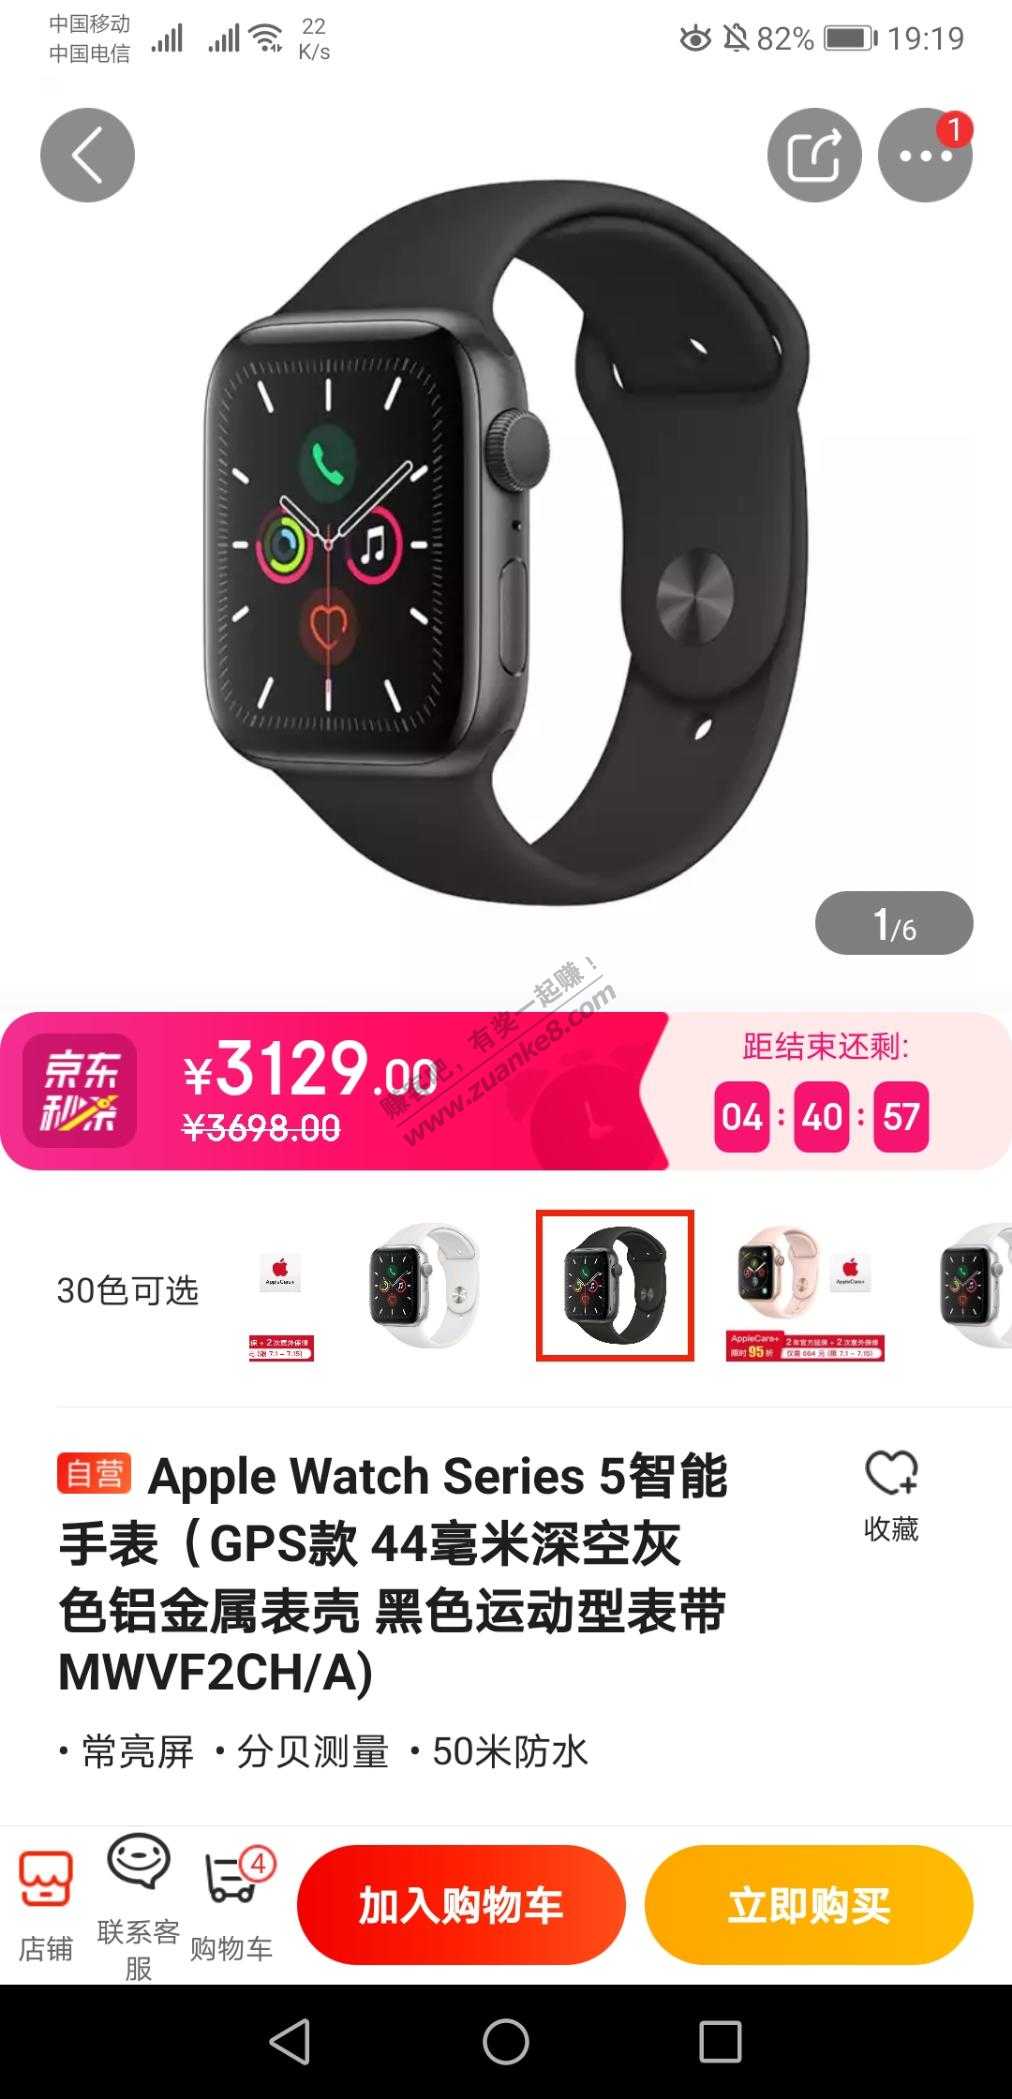 3100免费体验一个月苹果手表-惠小助(52huixz.com)